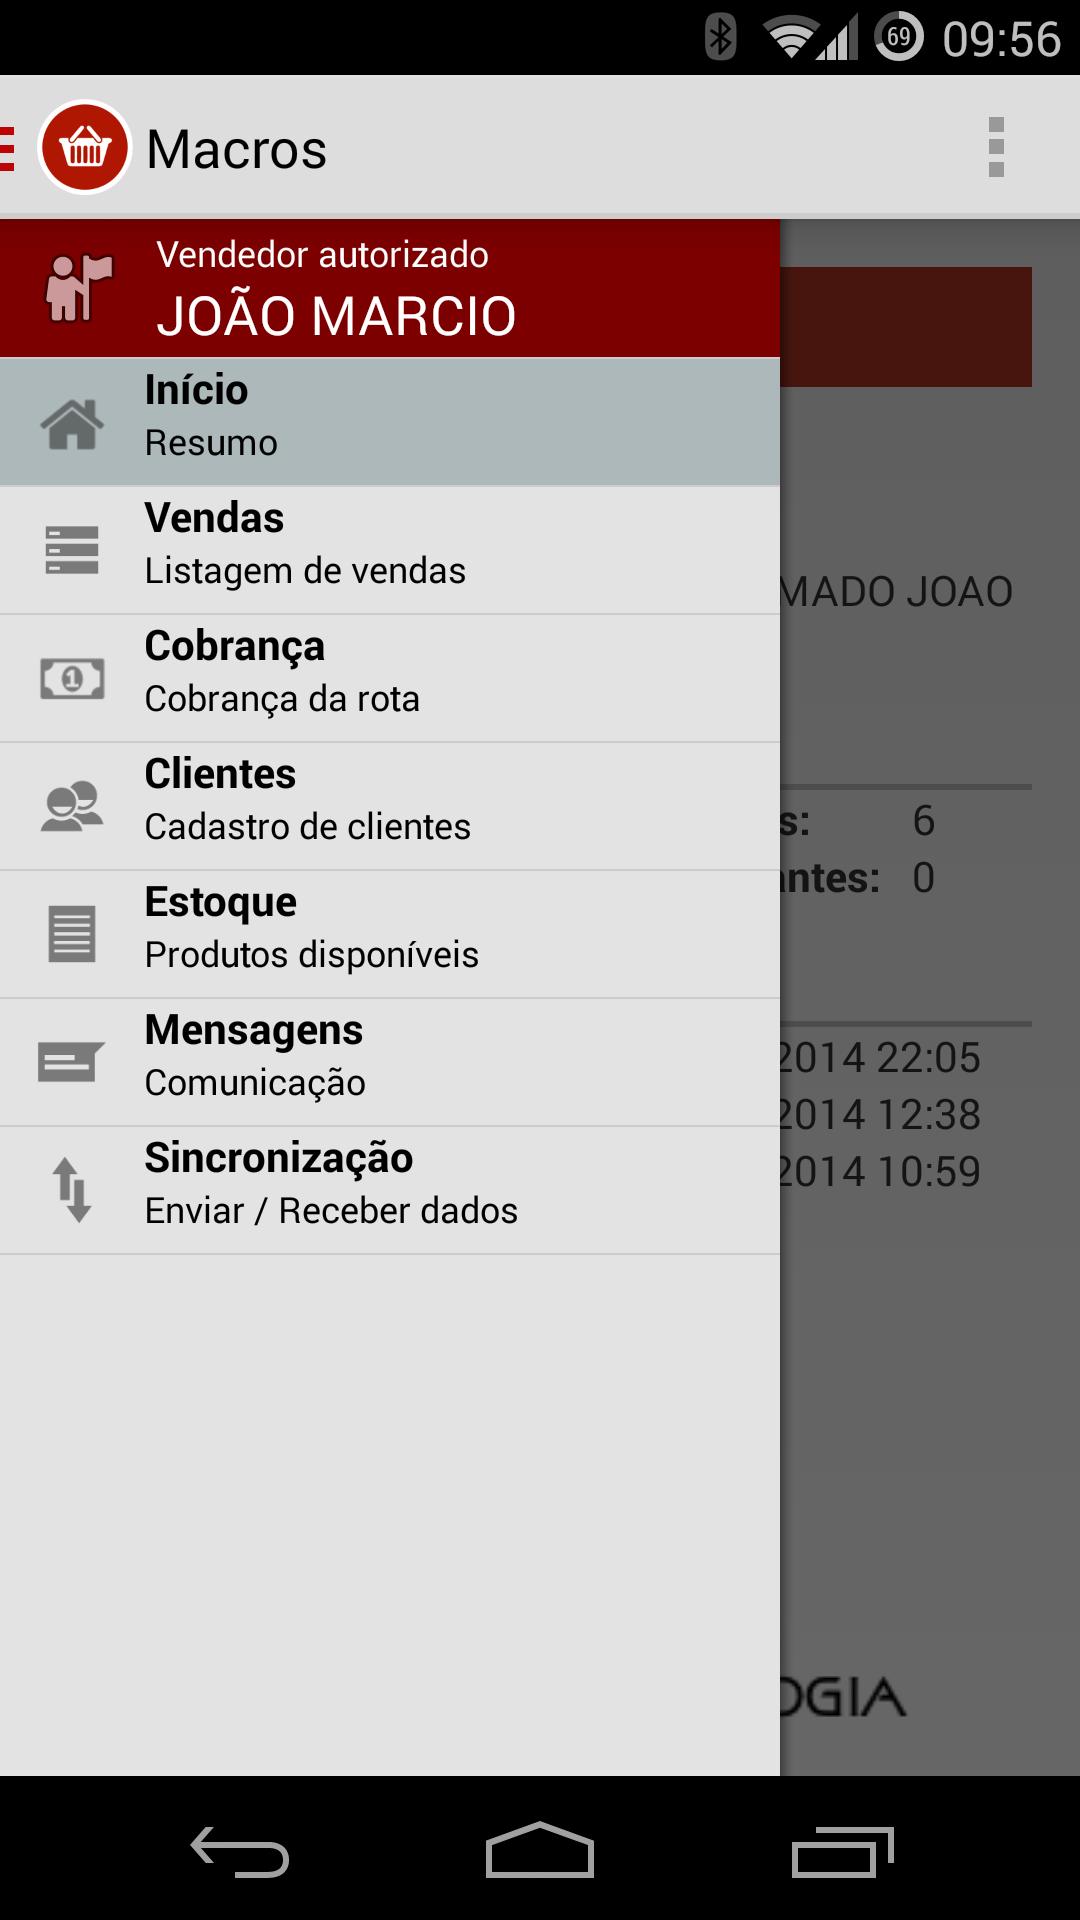 Macros Mobile 3.50 Screenshot 1